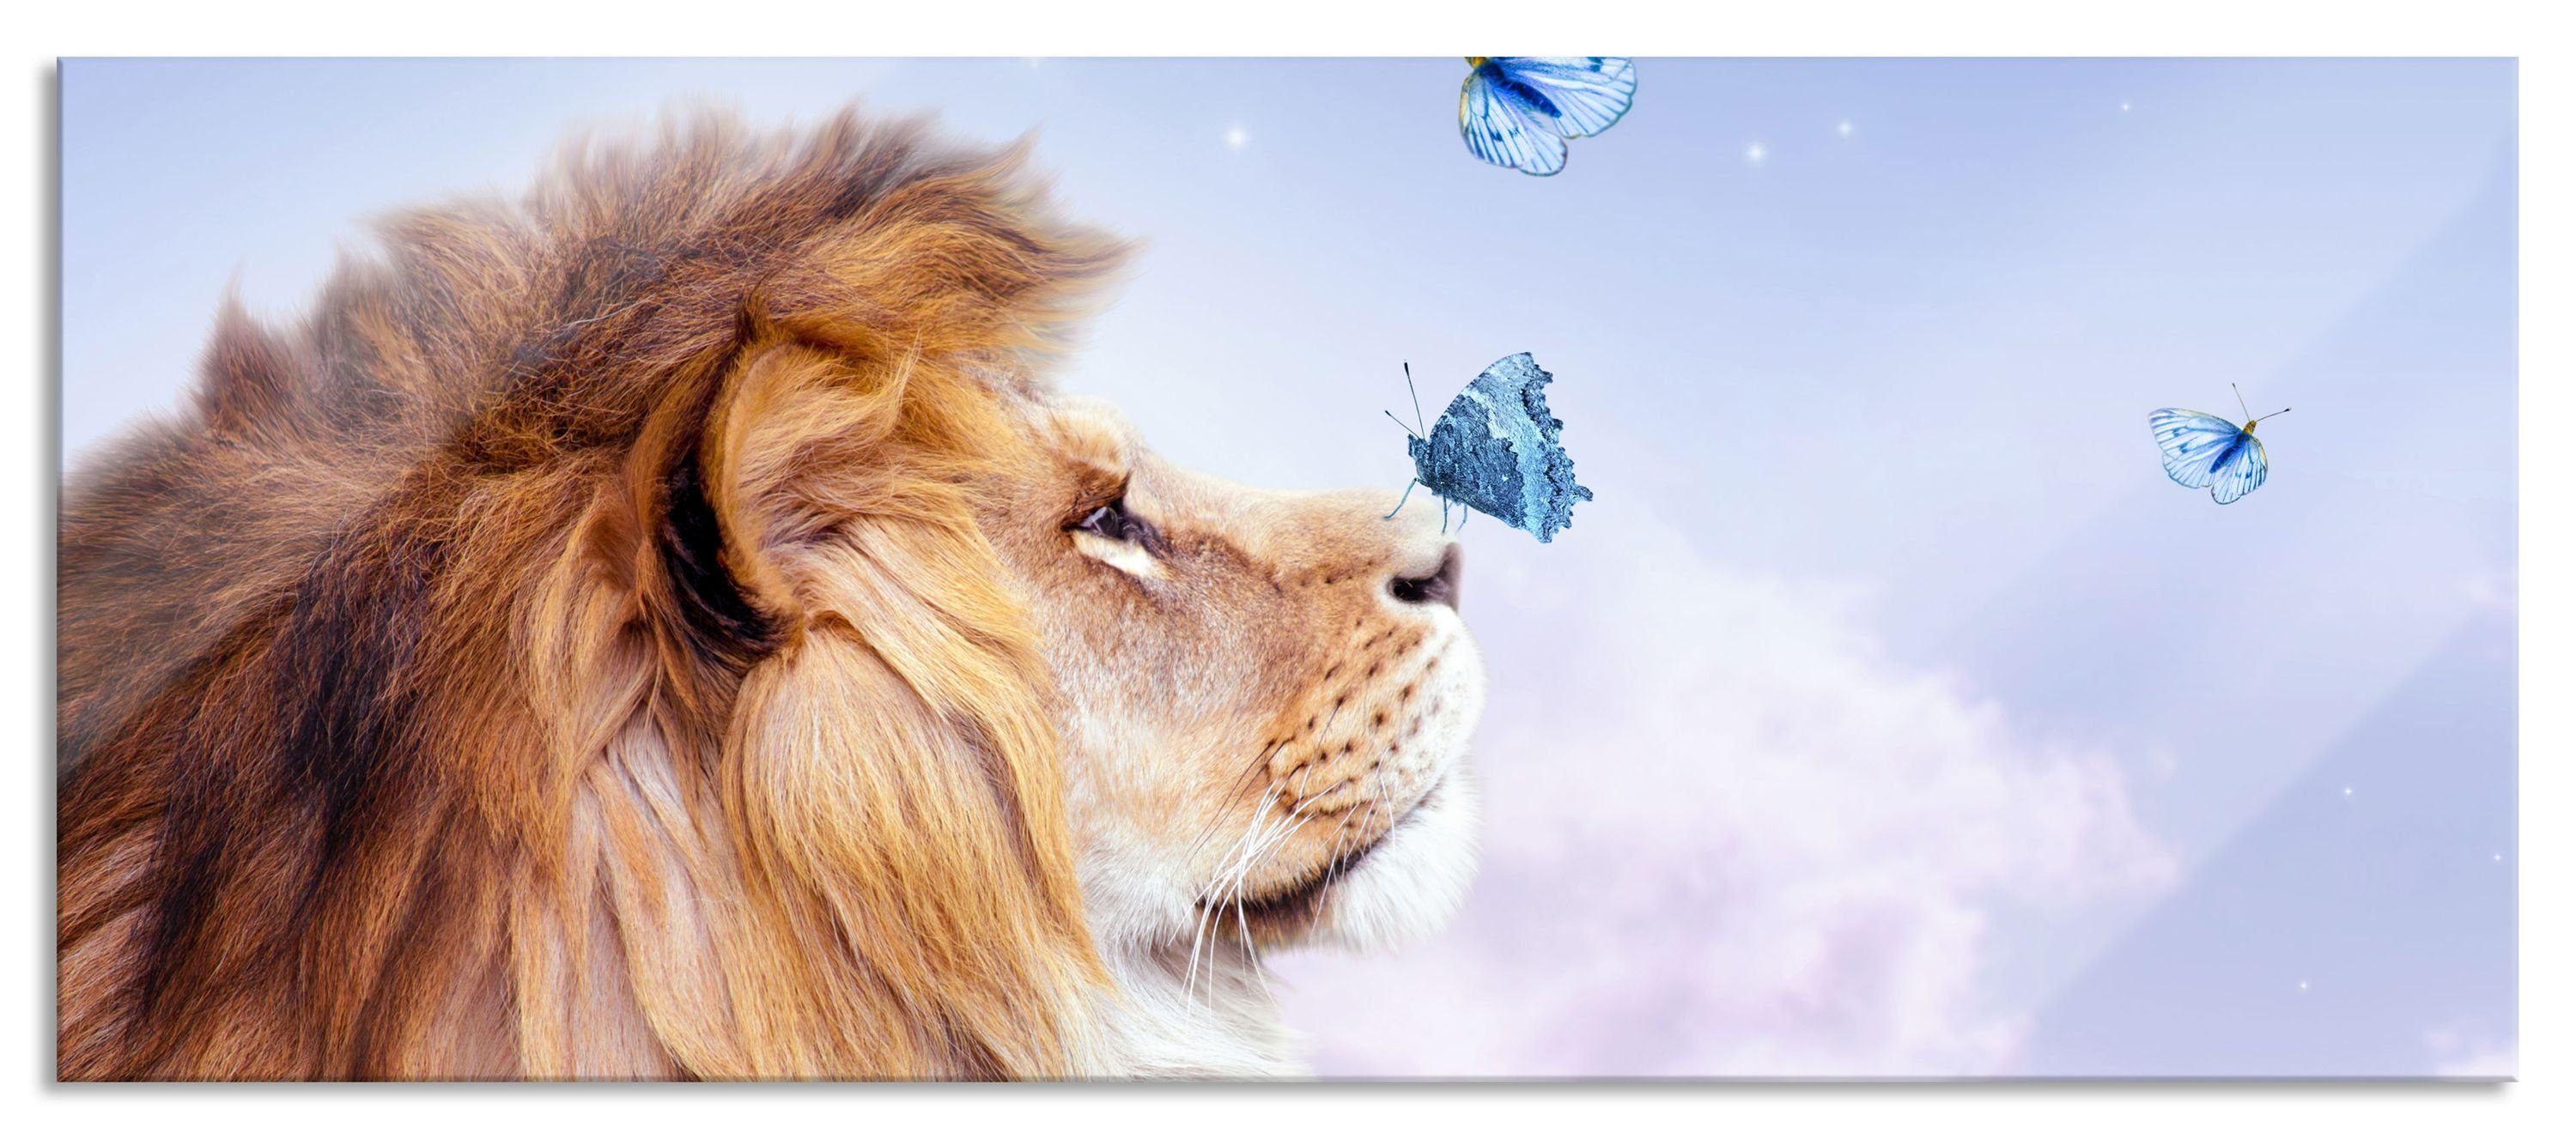 Pixxprint Glasbild Löwe mit blauen Schmetterlingen, Löwe mit blauen Schmetterlingen (1 St), Glasbild aus Echtglas, inkl. Aufhängungen und Abstandshalter